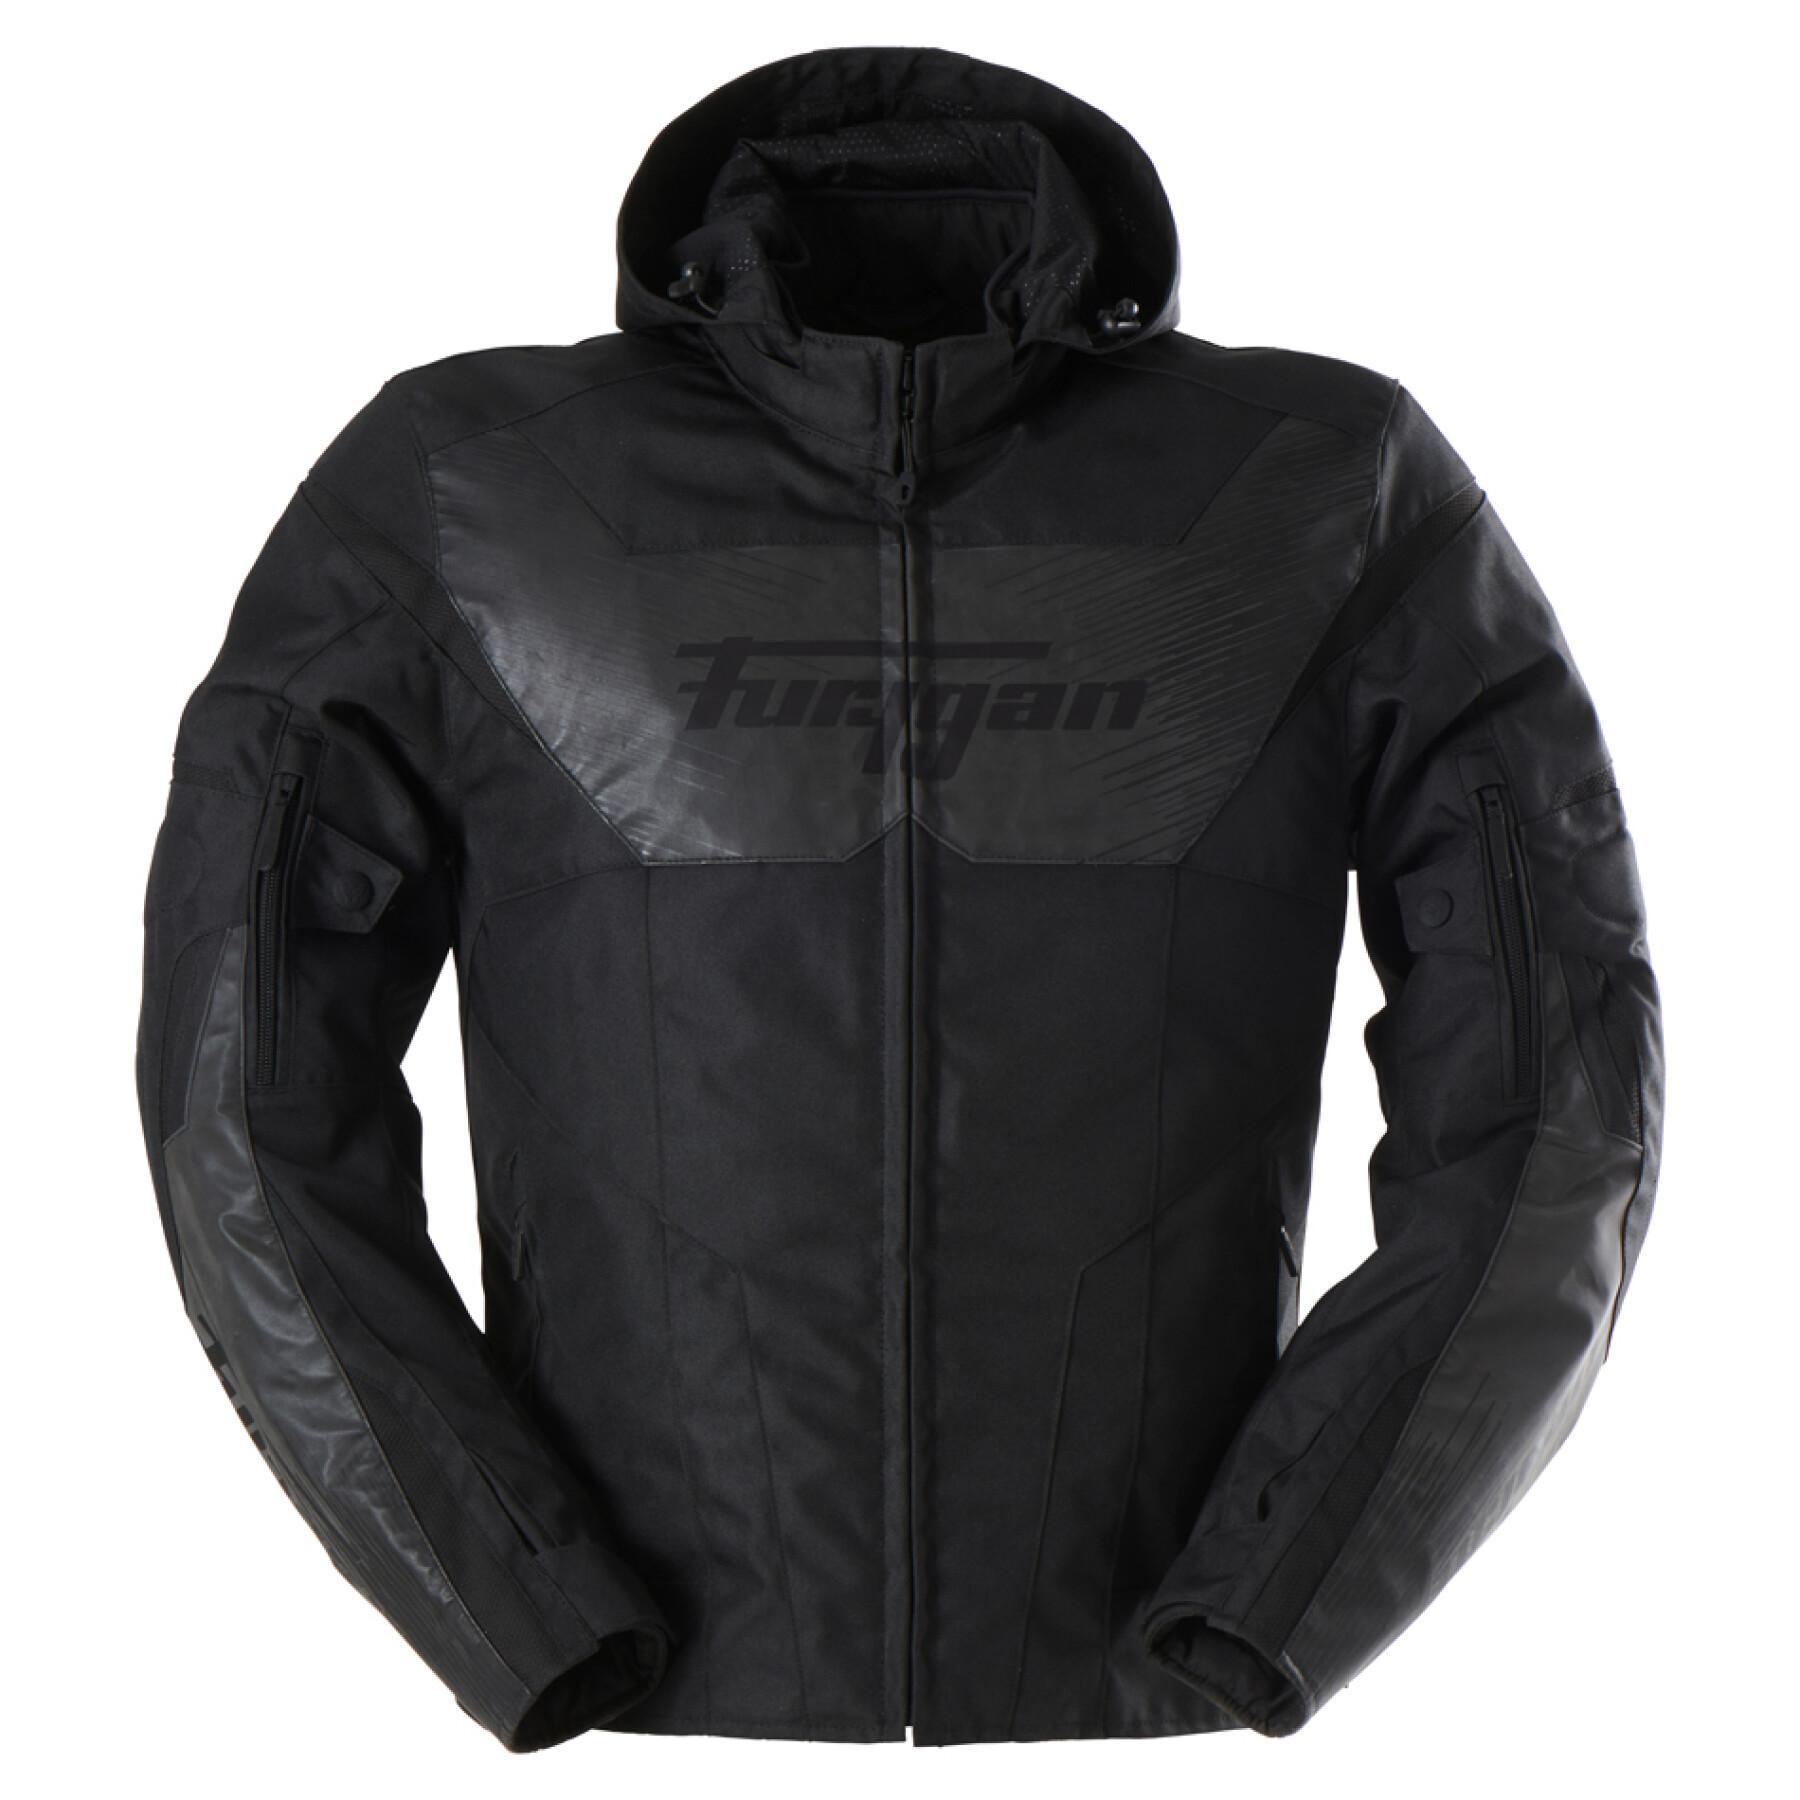 Motorcycle leather jacket Furygan Shard HV